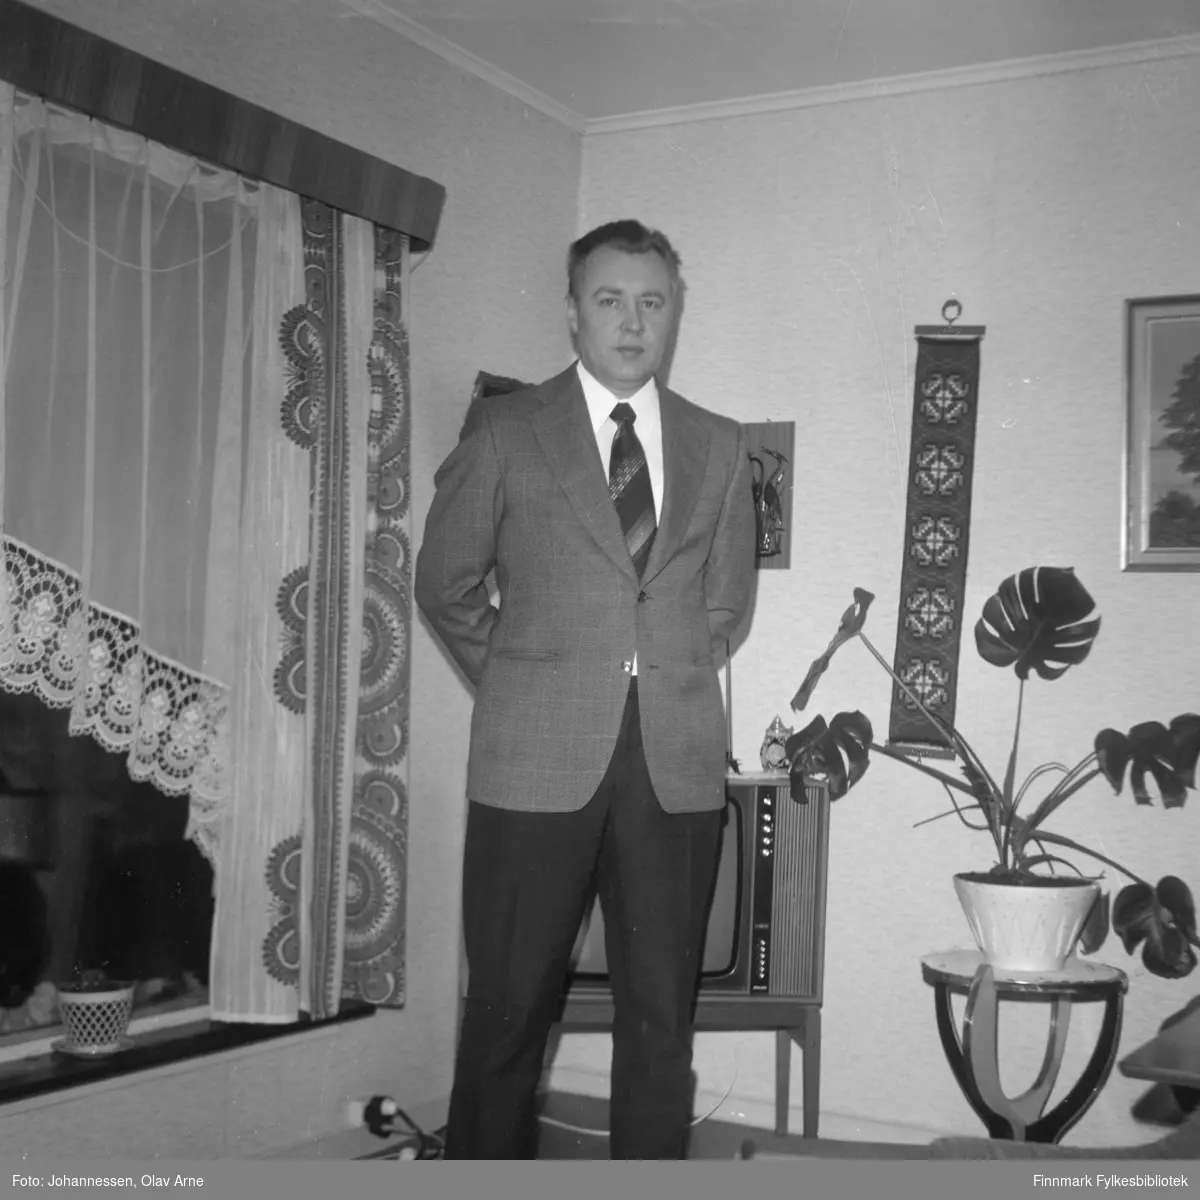 Leif Olsborg foran vindu med tidstypiske storch gardiner 

Foto trolig tatt på tidlig 1970-tallet